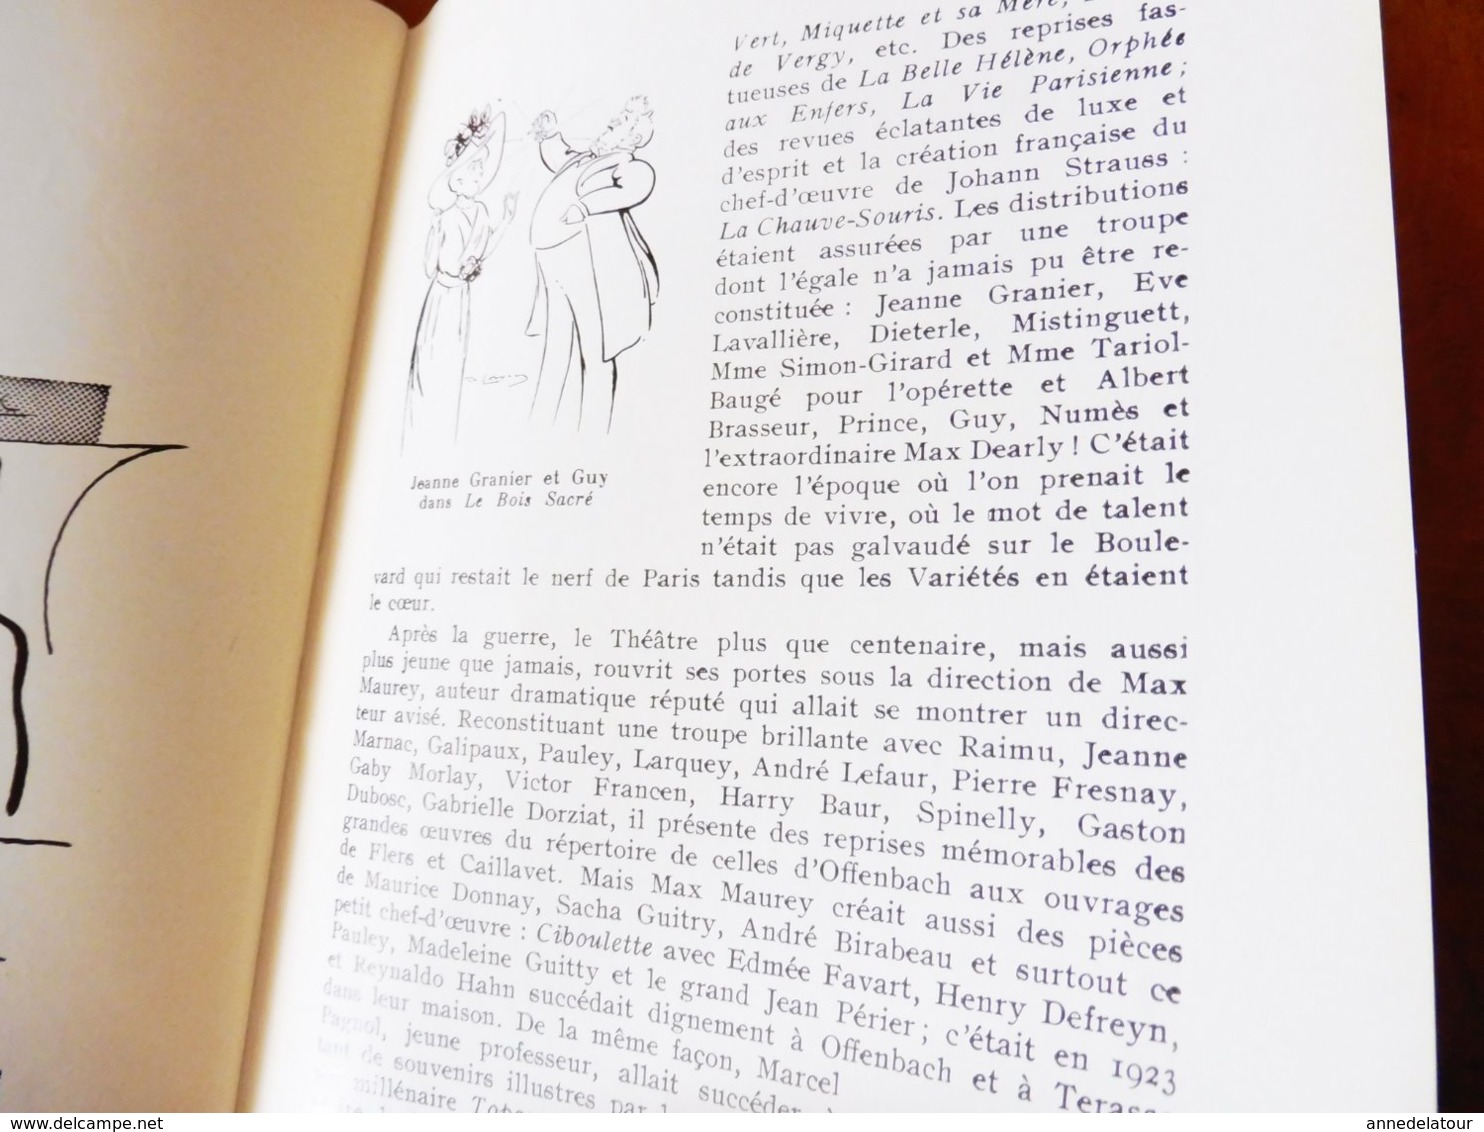 1964 THÉÂTRE des VARIÉTÉS : c'est une belle histoire (sur 7 pages de texte et photos), Nombr photographies d'artistes